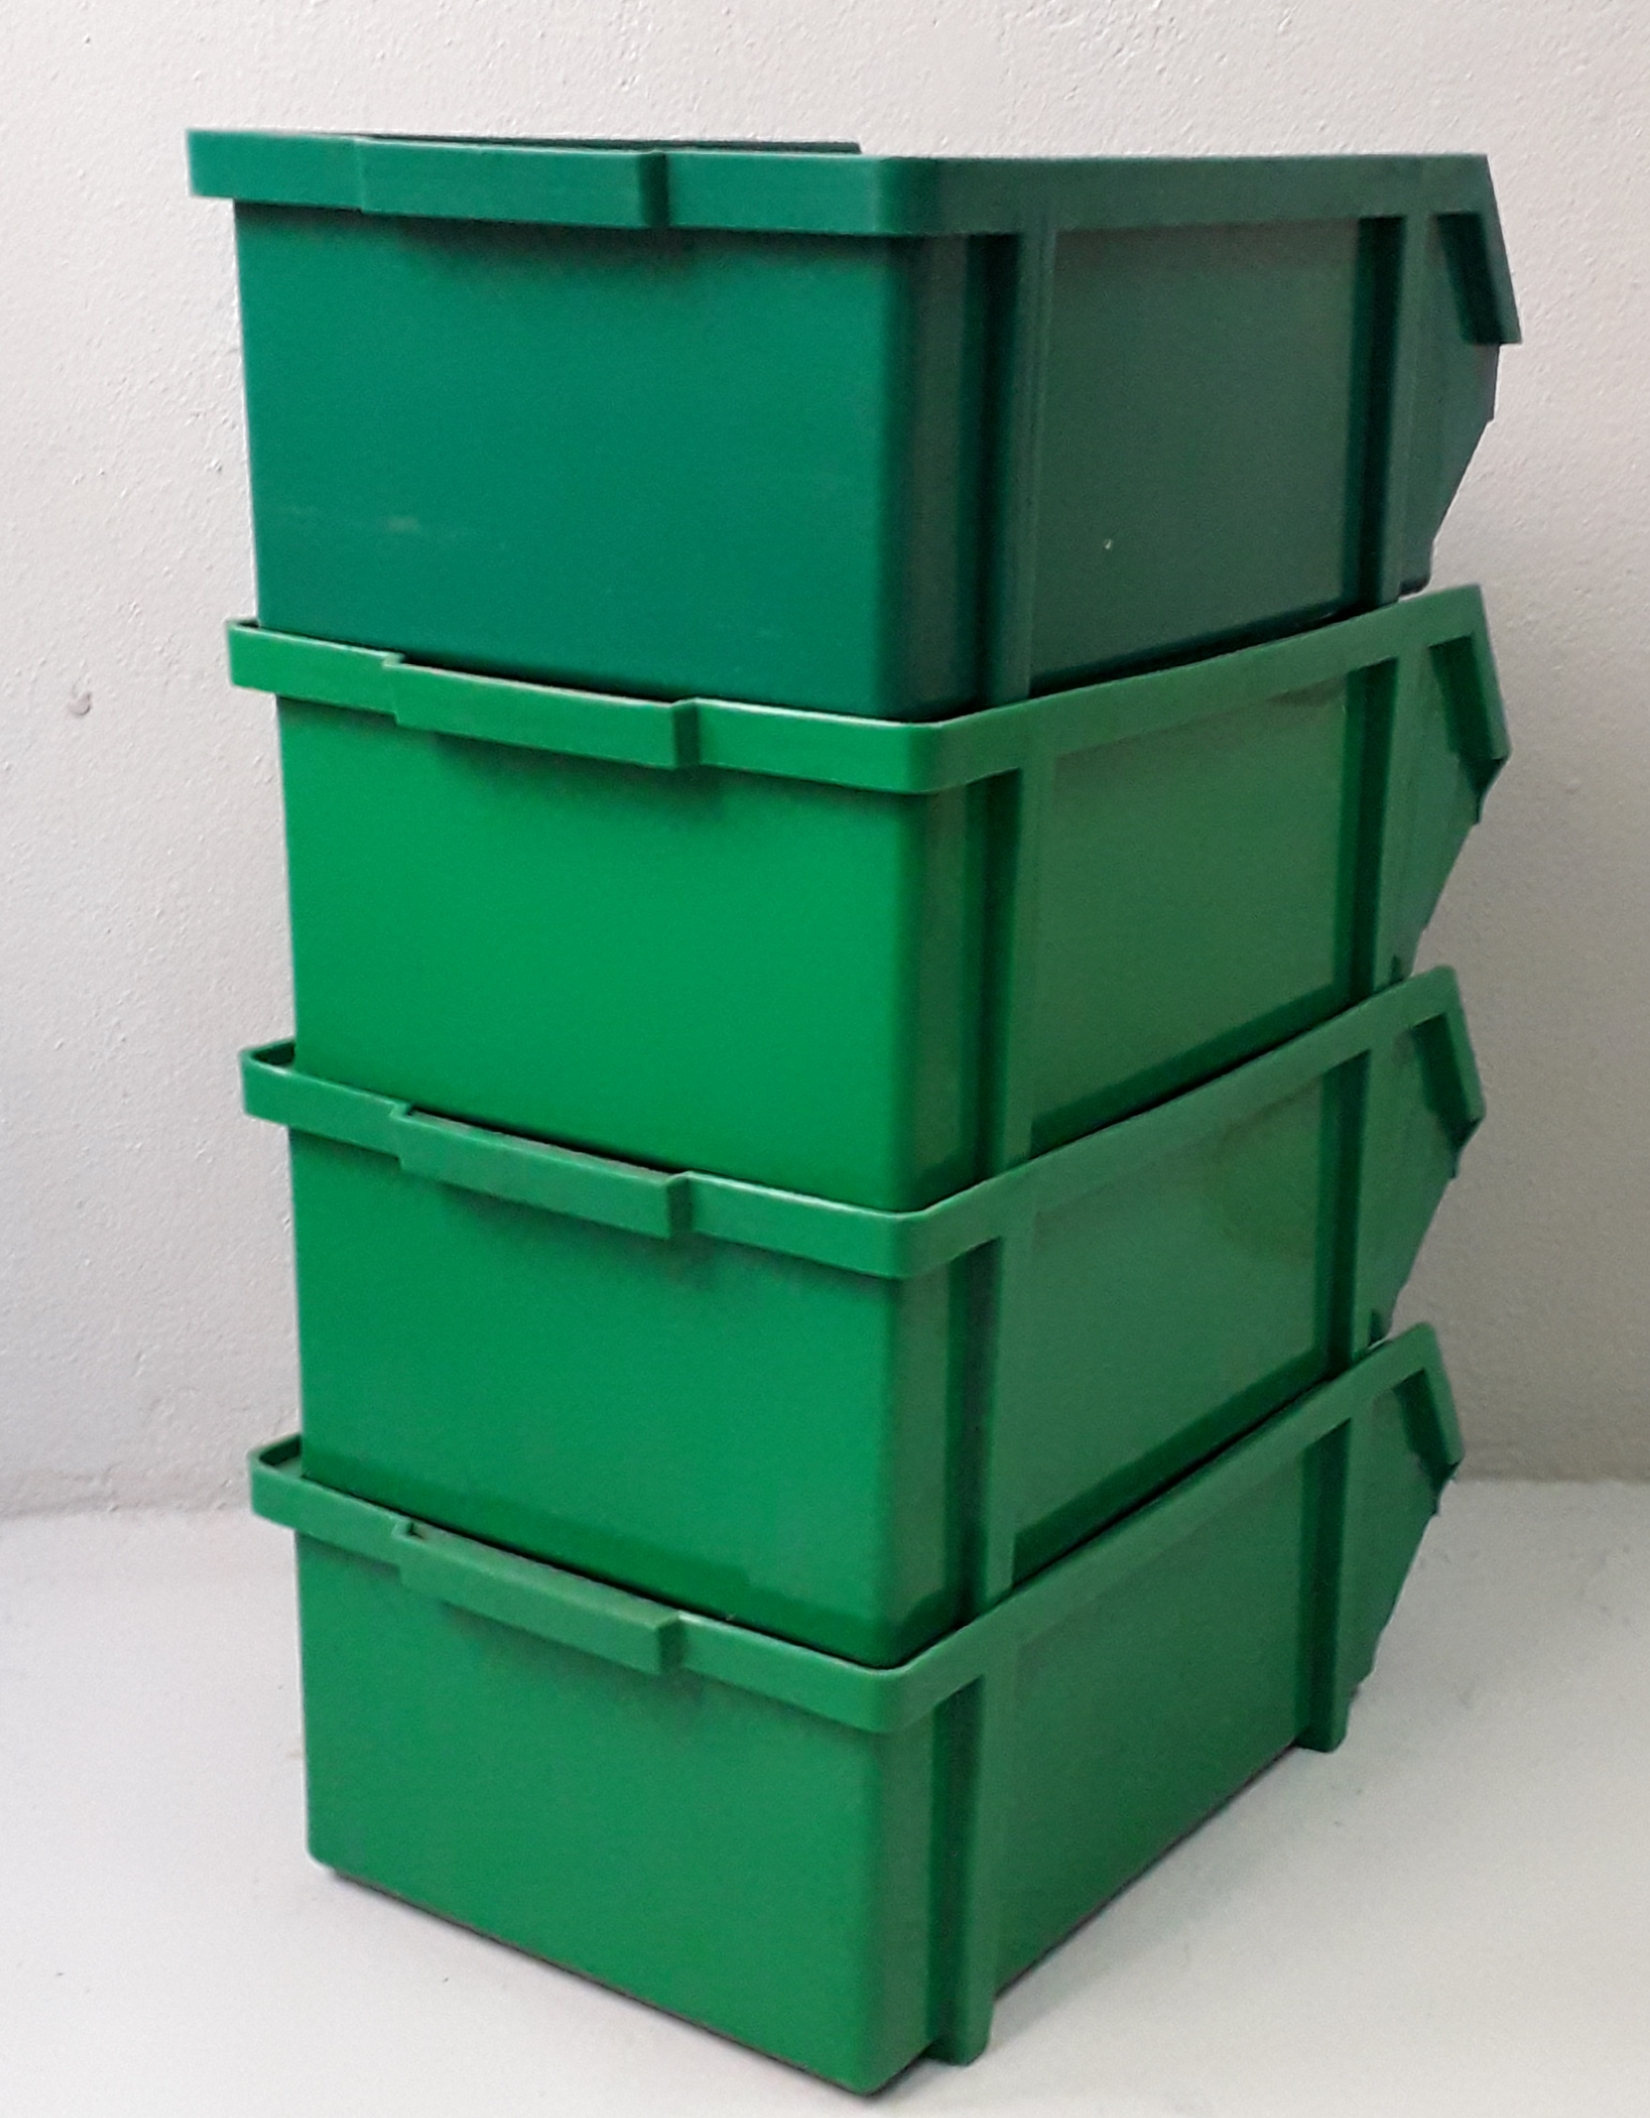 ชั้นกล่องพลาสติก สีเขียว